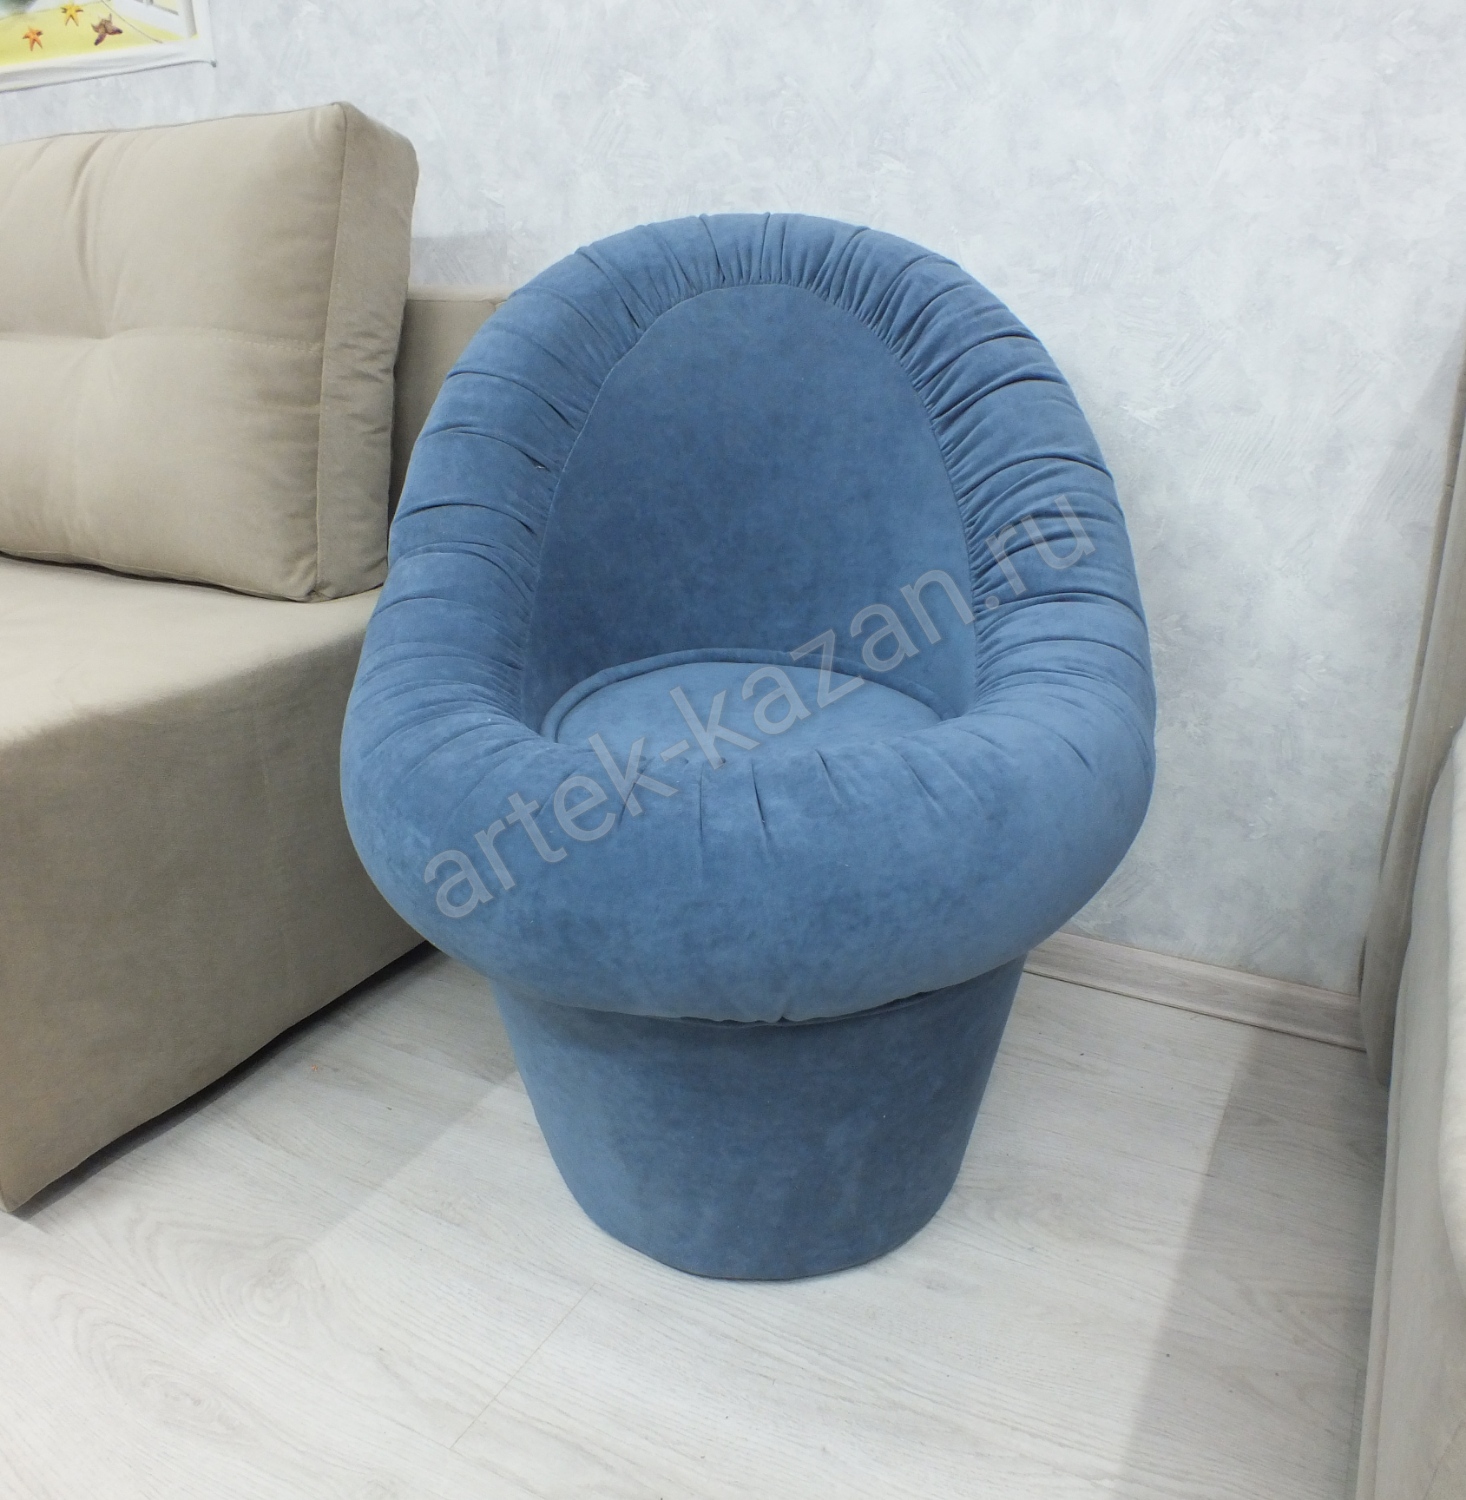 Кресло-пуф, фото 13. Купить недорогой диван по низкой цене от производителя можно у нас.